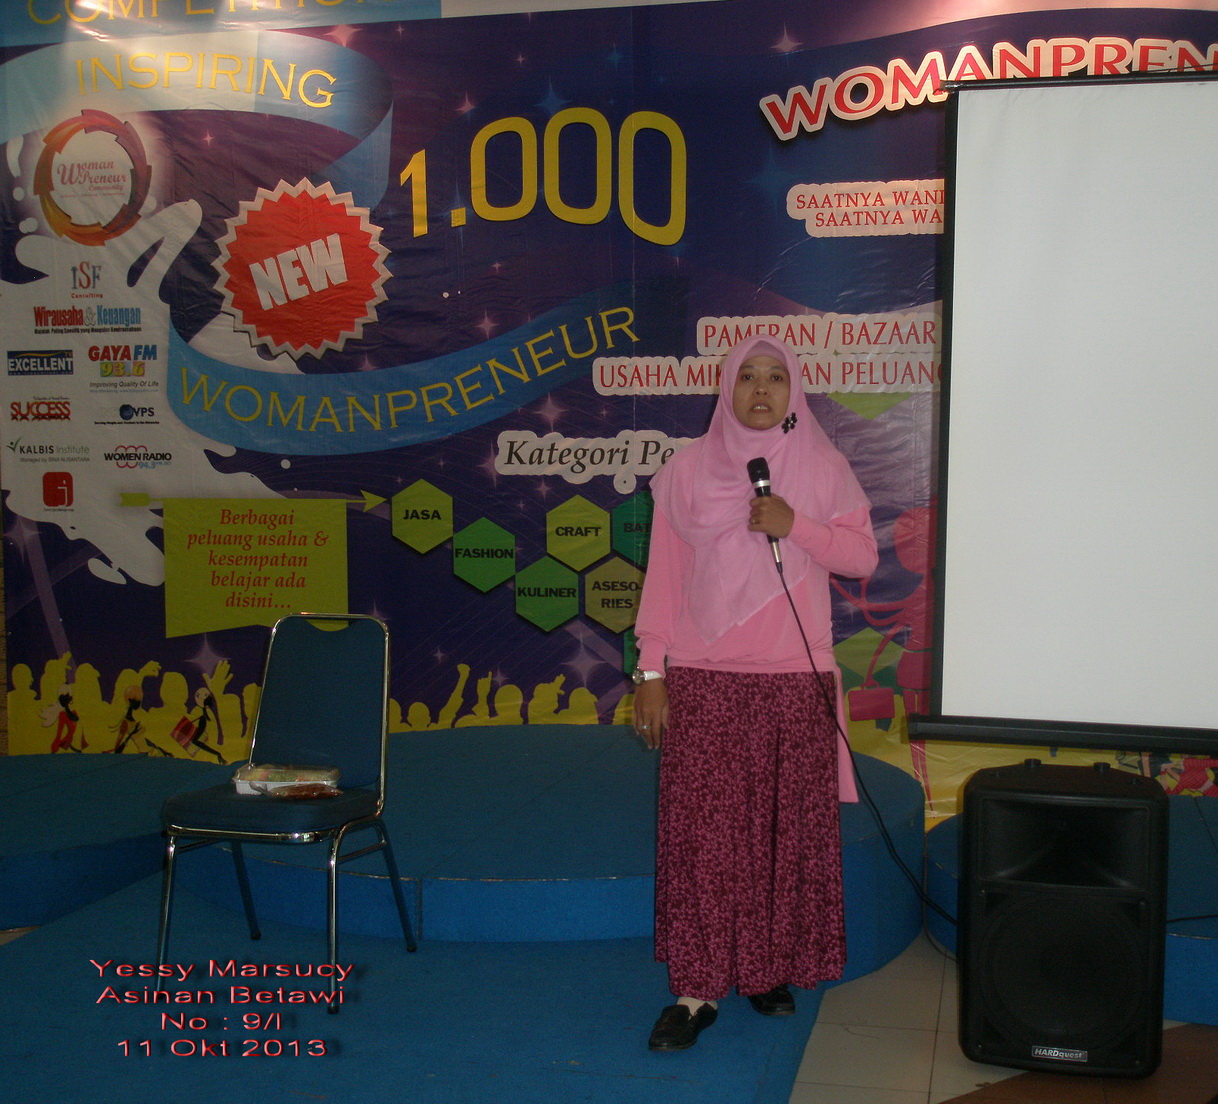 womenpreneur,womanpreneur community,womanpreneur competition,kompitisi bisnis,womanpreneur